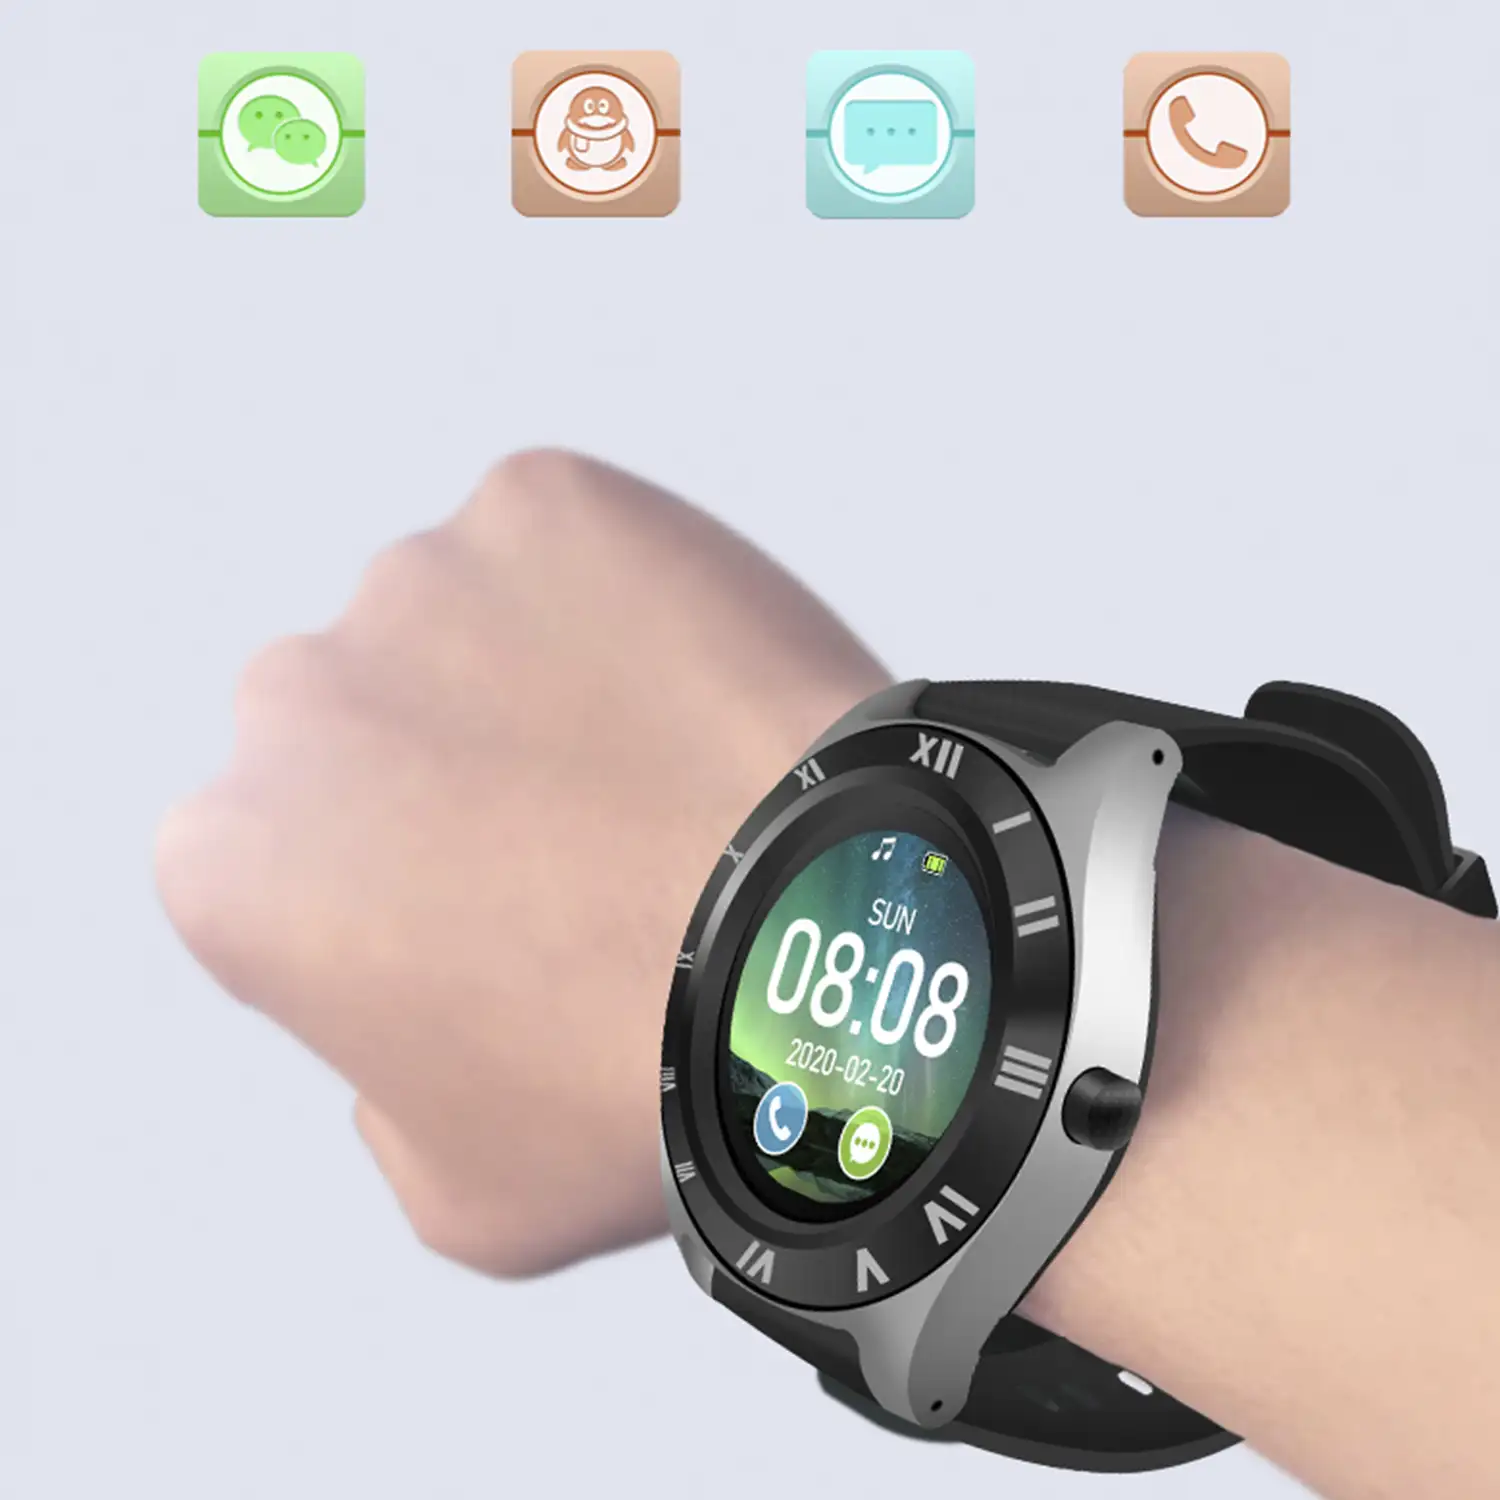 Smartwatch M11 multifunción con cámara, podómetro, aviso de llamadas, notificaciones. App para Android. Opción de SIM y micro SD.